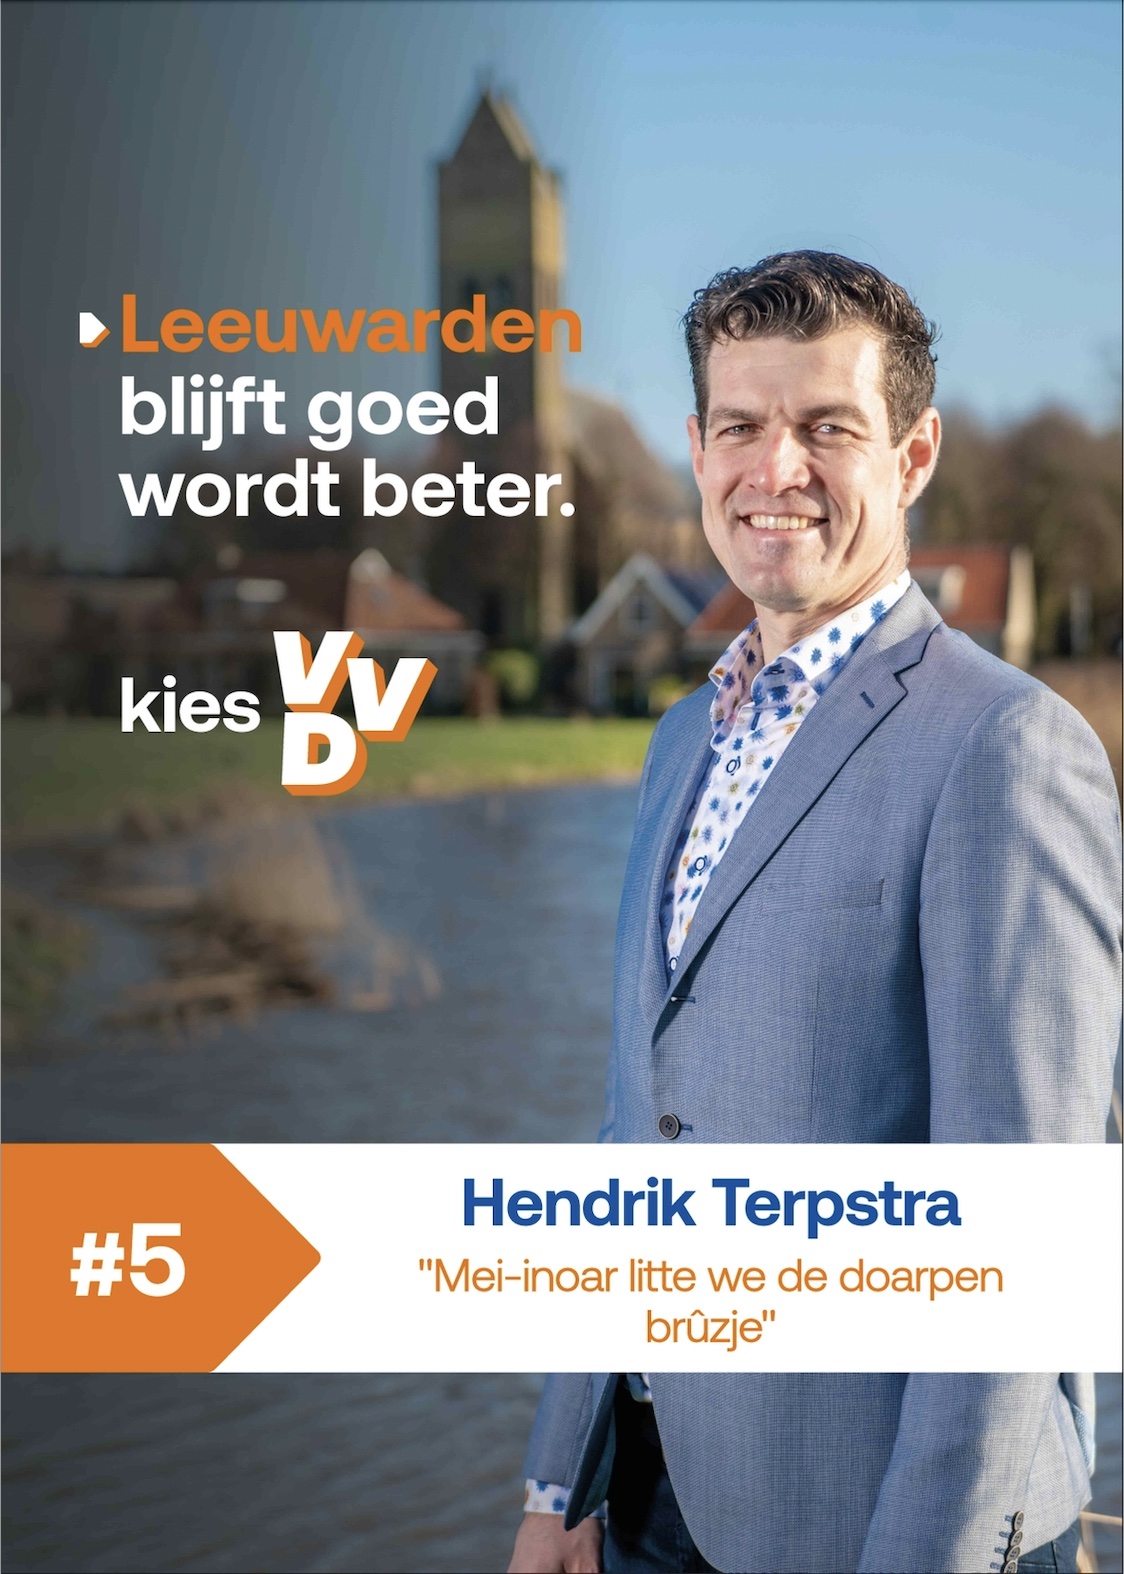 Hendrik Terpstra